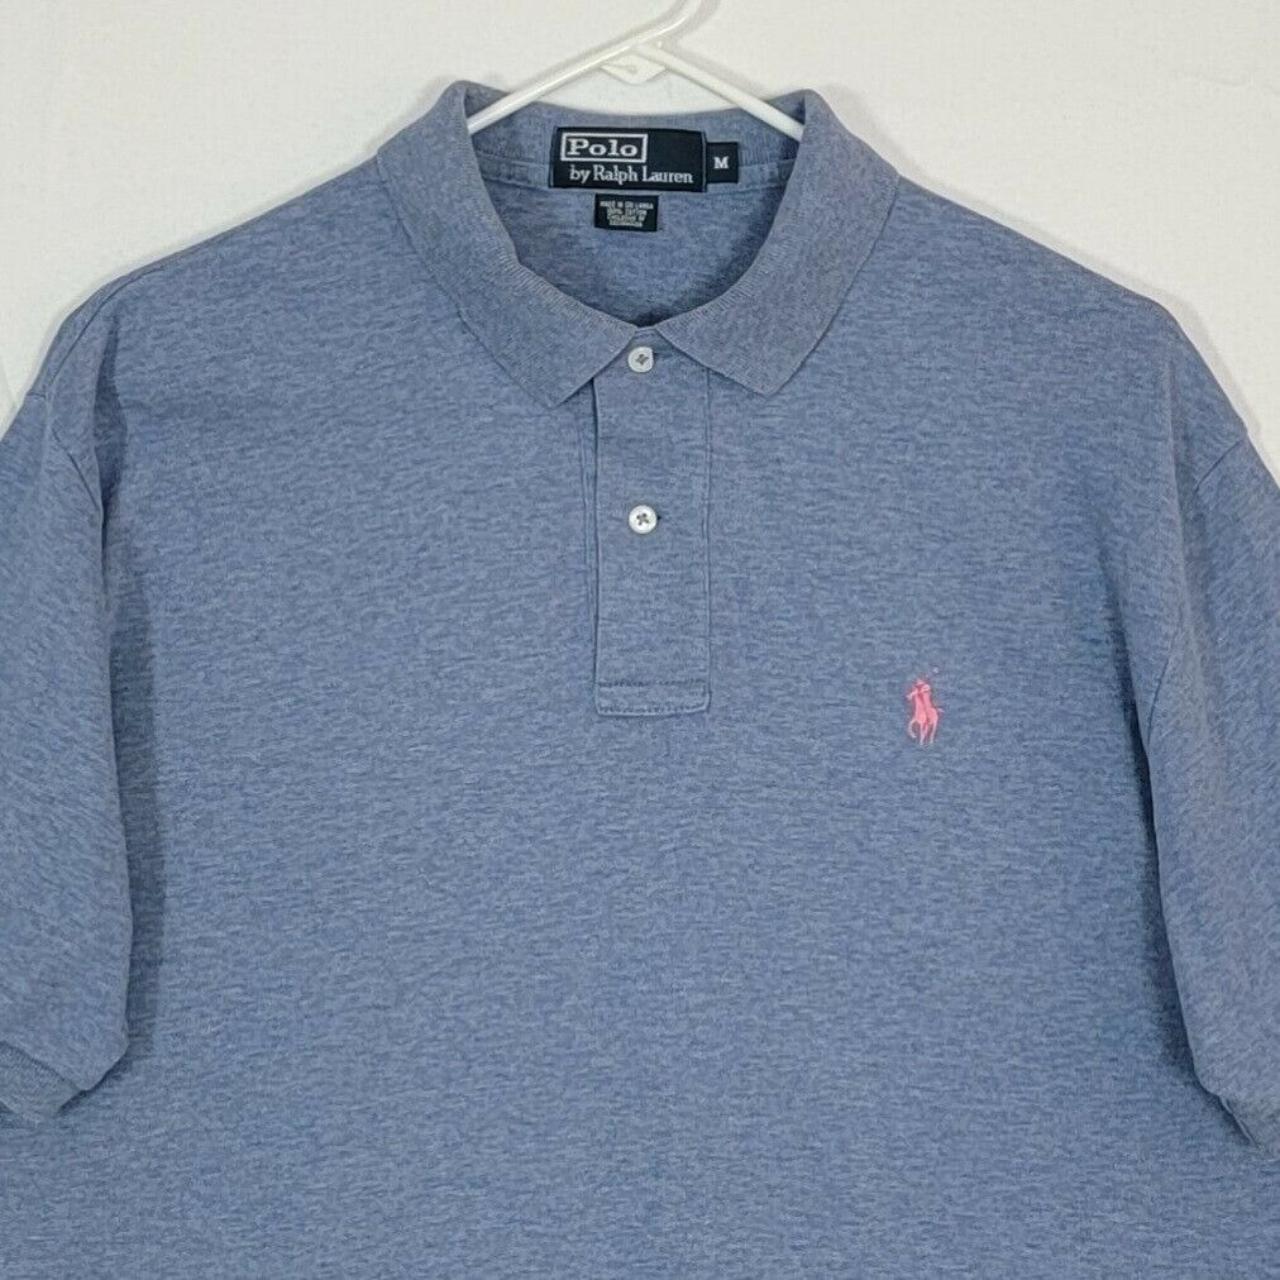 Polo by Ralph Lauren Men's M Polo Golf Shirt... - Depop